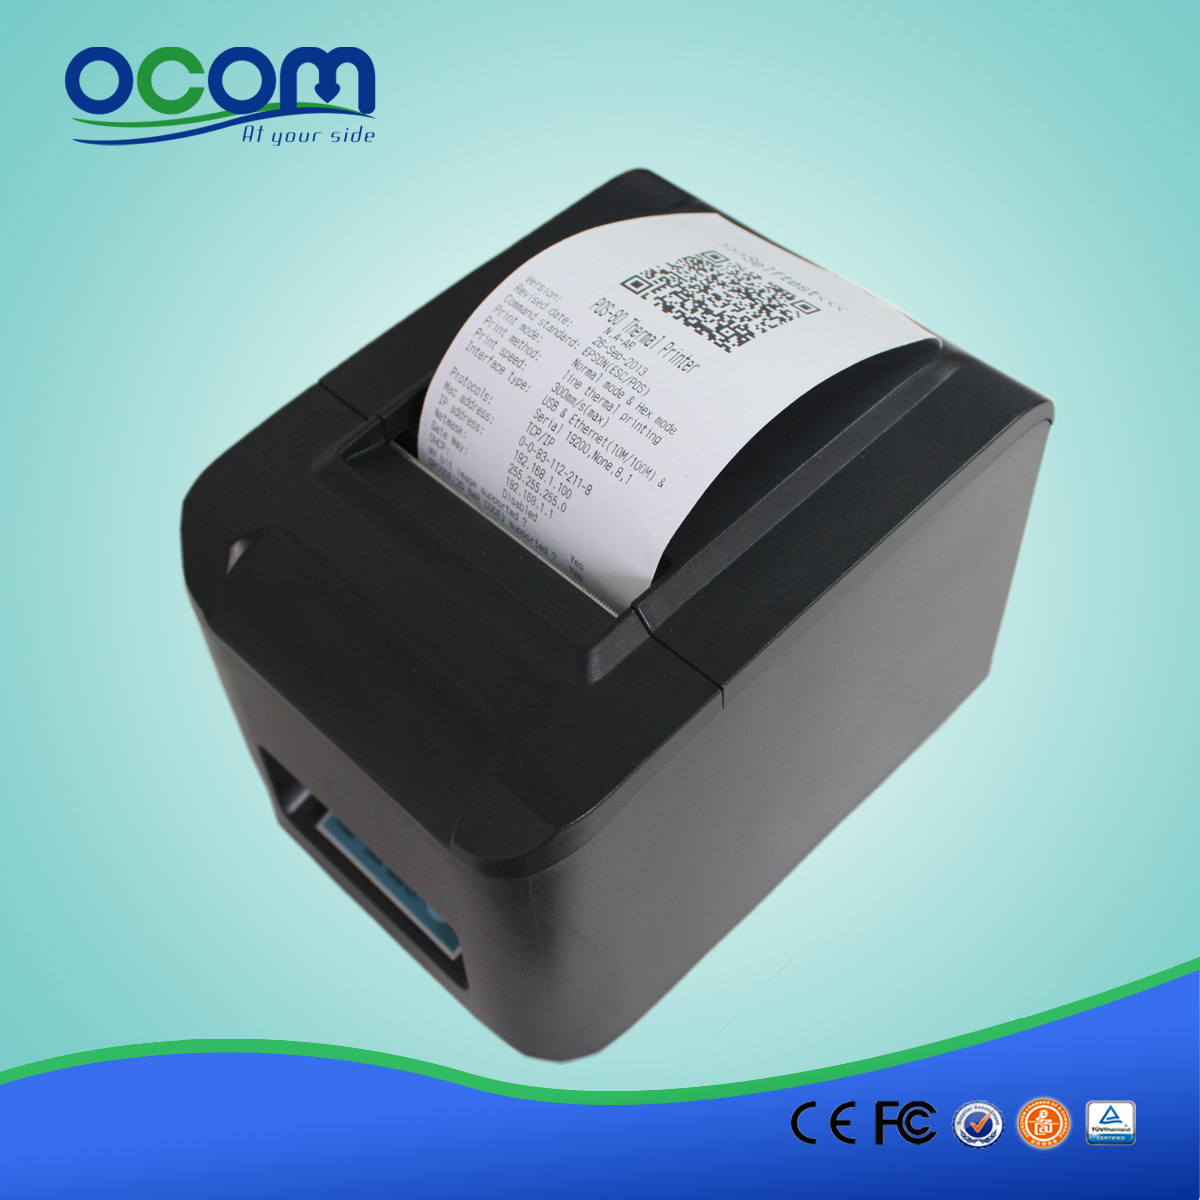 80 milímetros de alta velocidade Wi-Fi POS recibo impressora OCPP-808-W